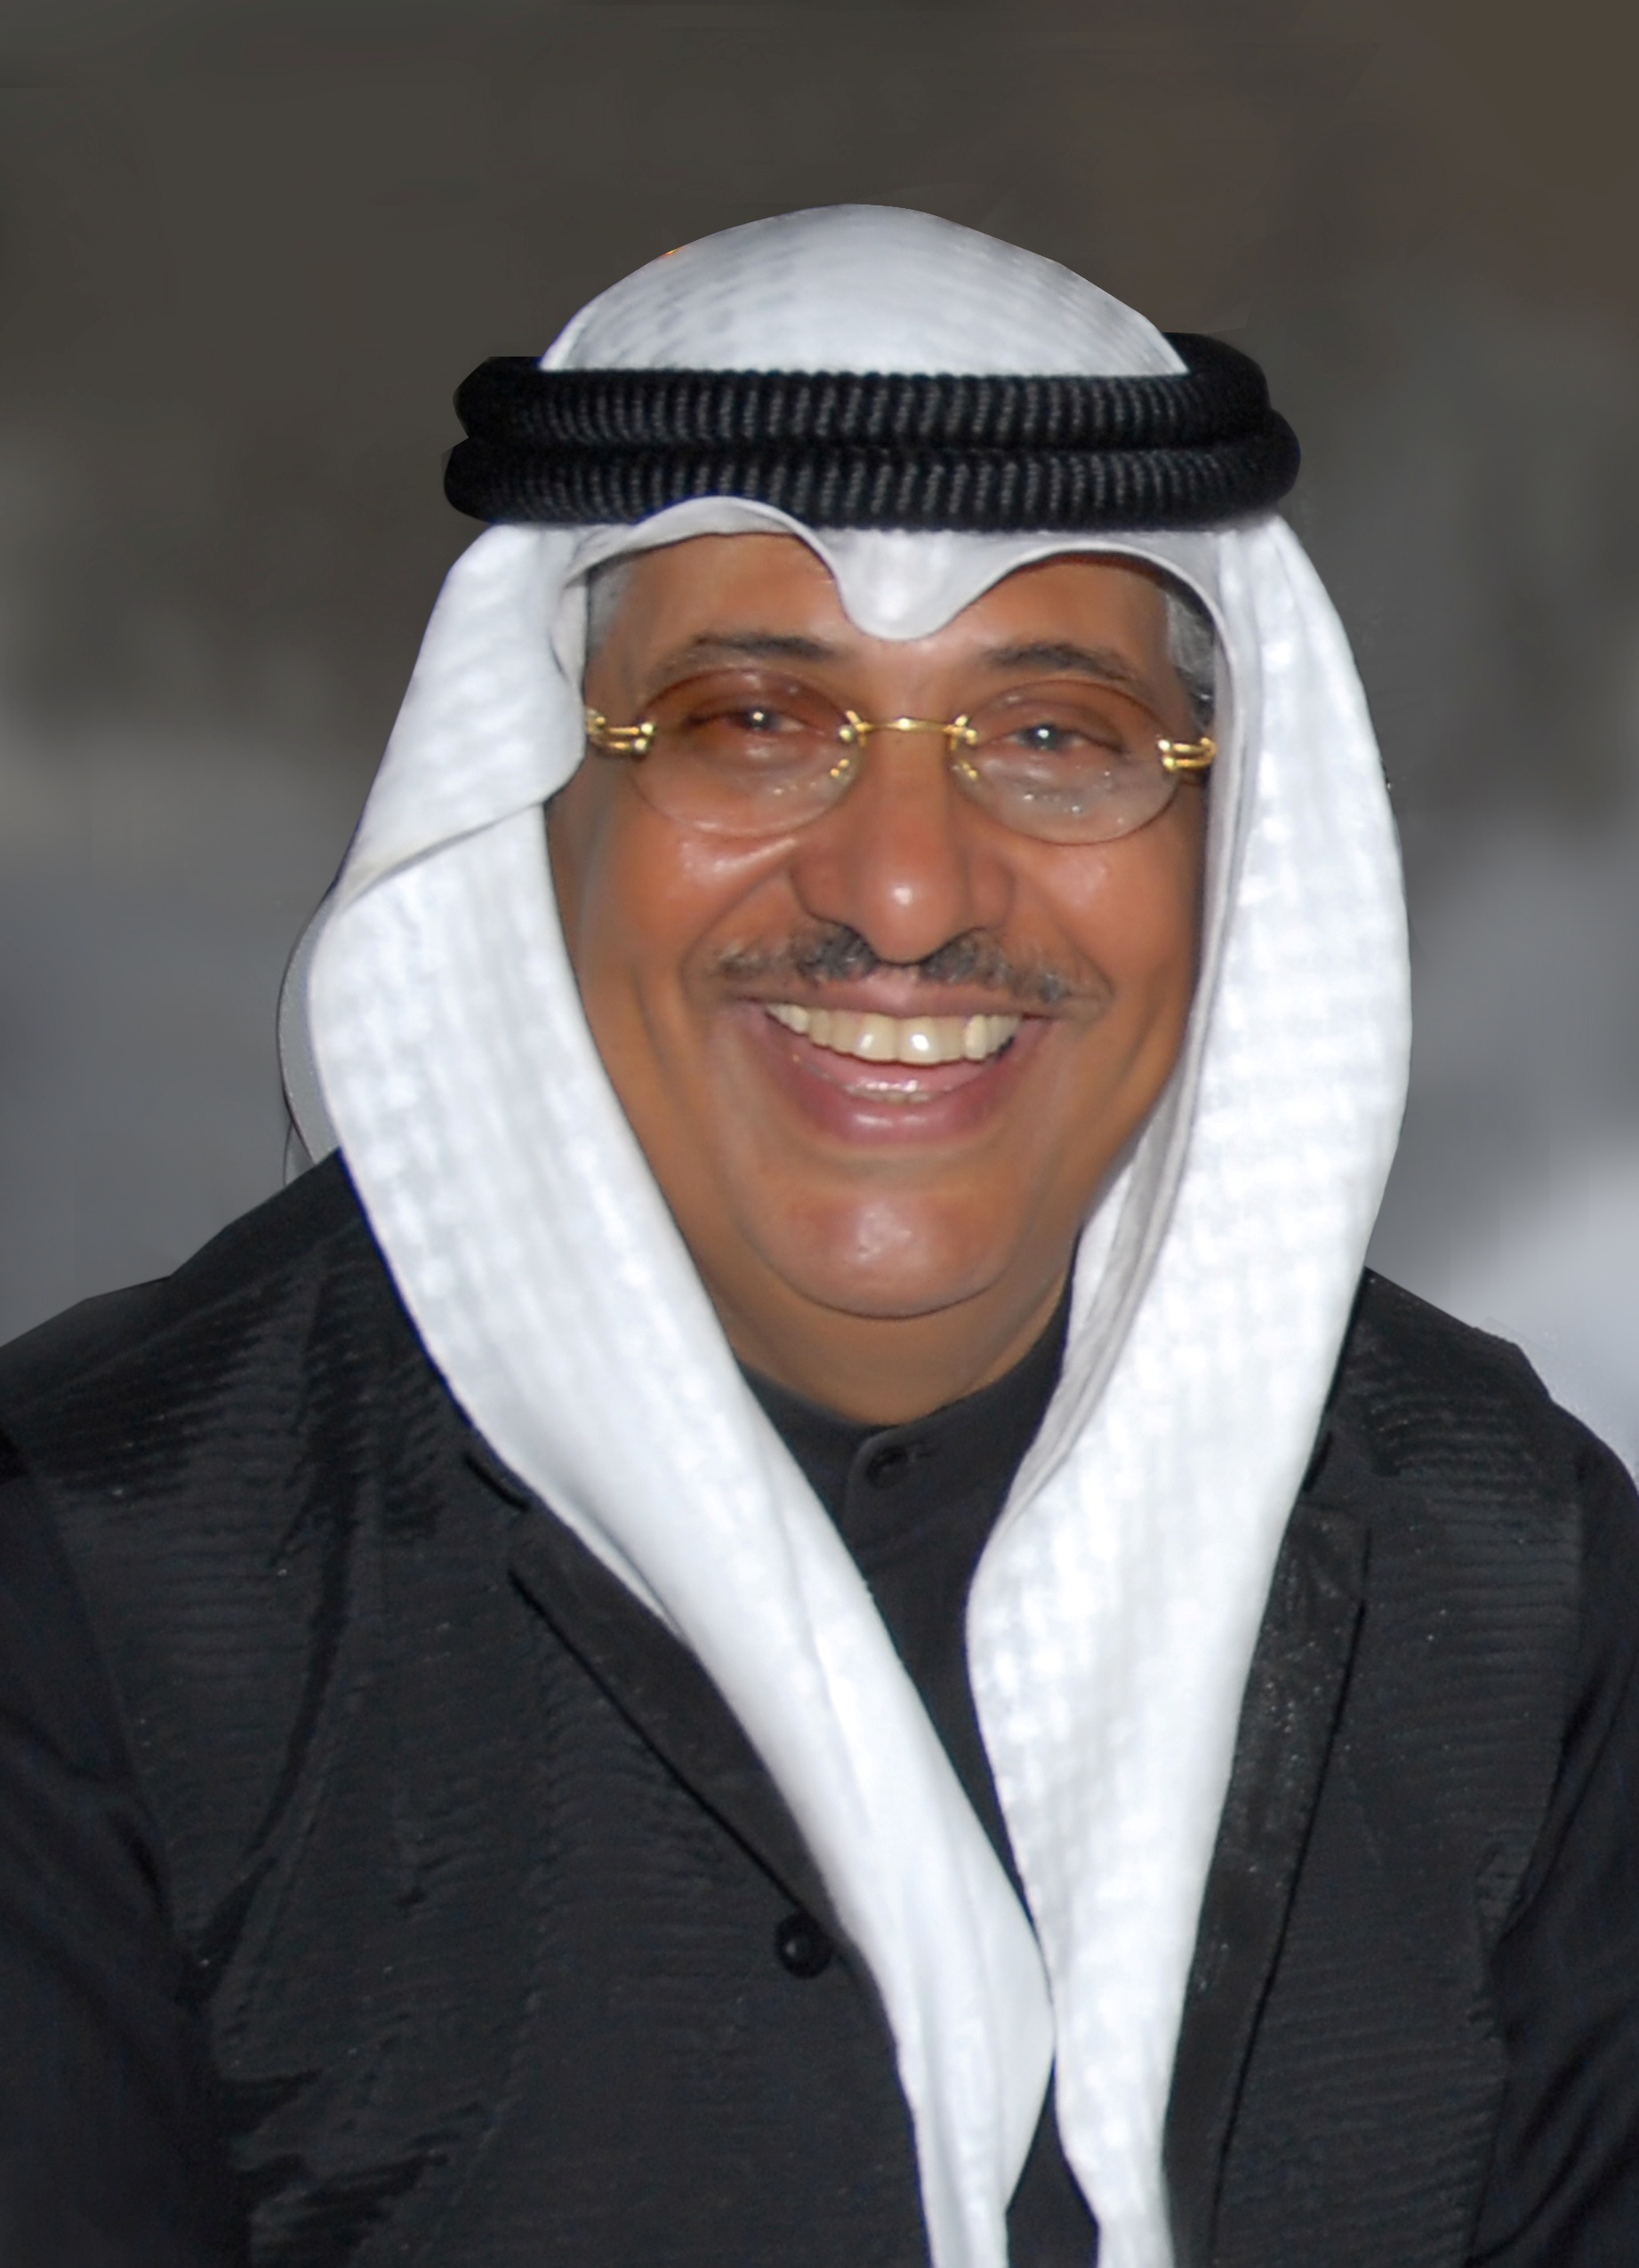 رئيس (لجنة الكويت الوطنية للتنافسية) الدكتور فهد الراشد